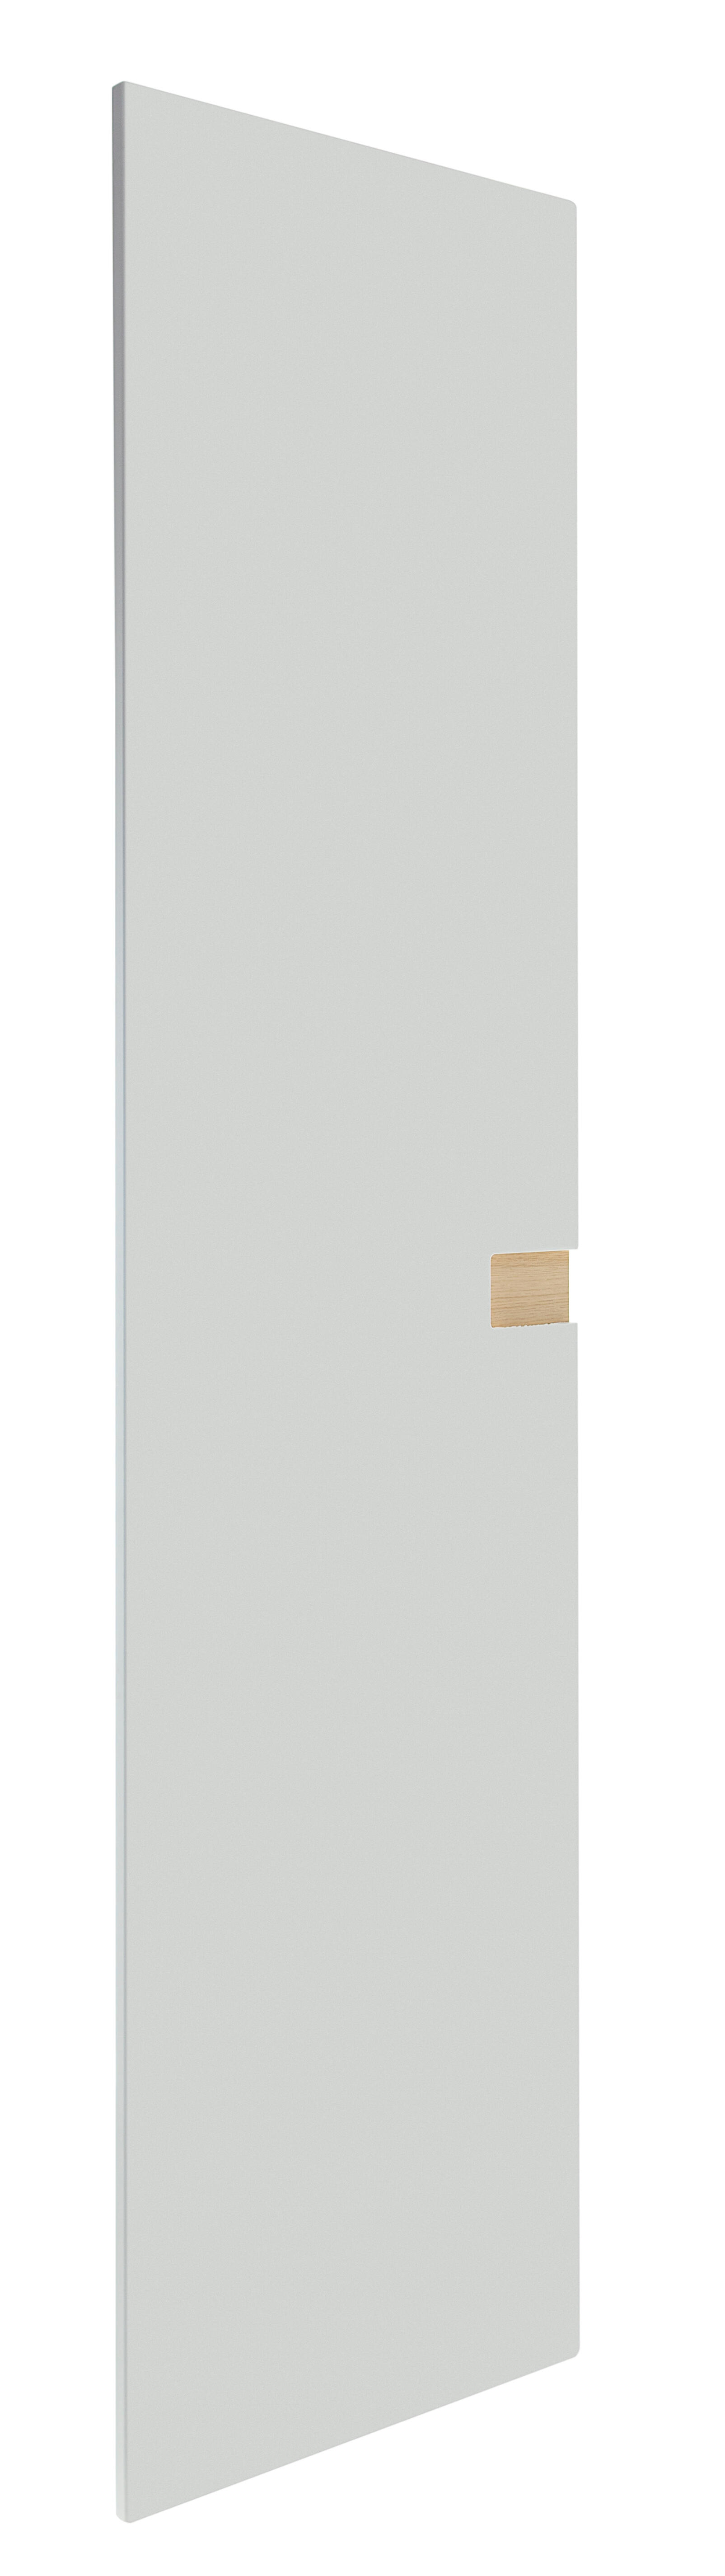 Puerta abatible de armario nepal blanco y roble 60x240x1,9cm